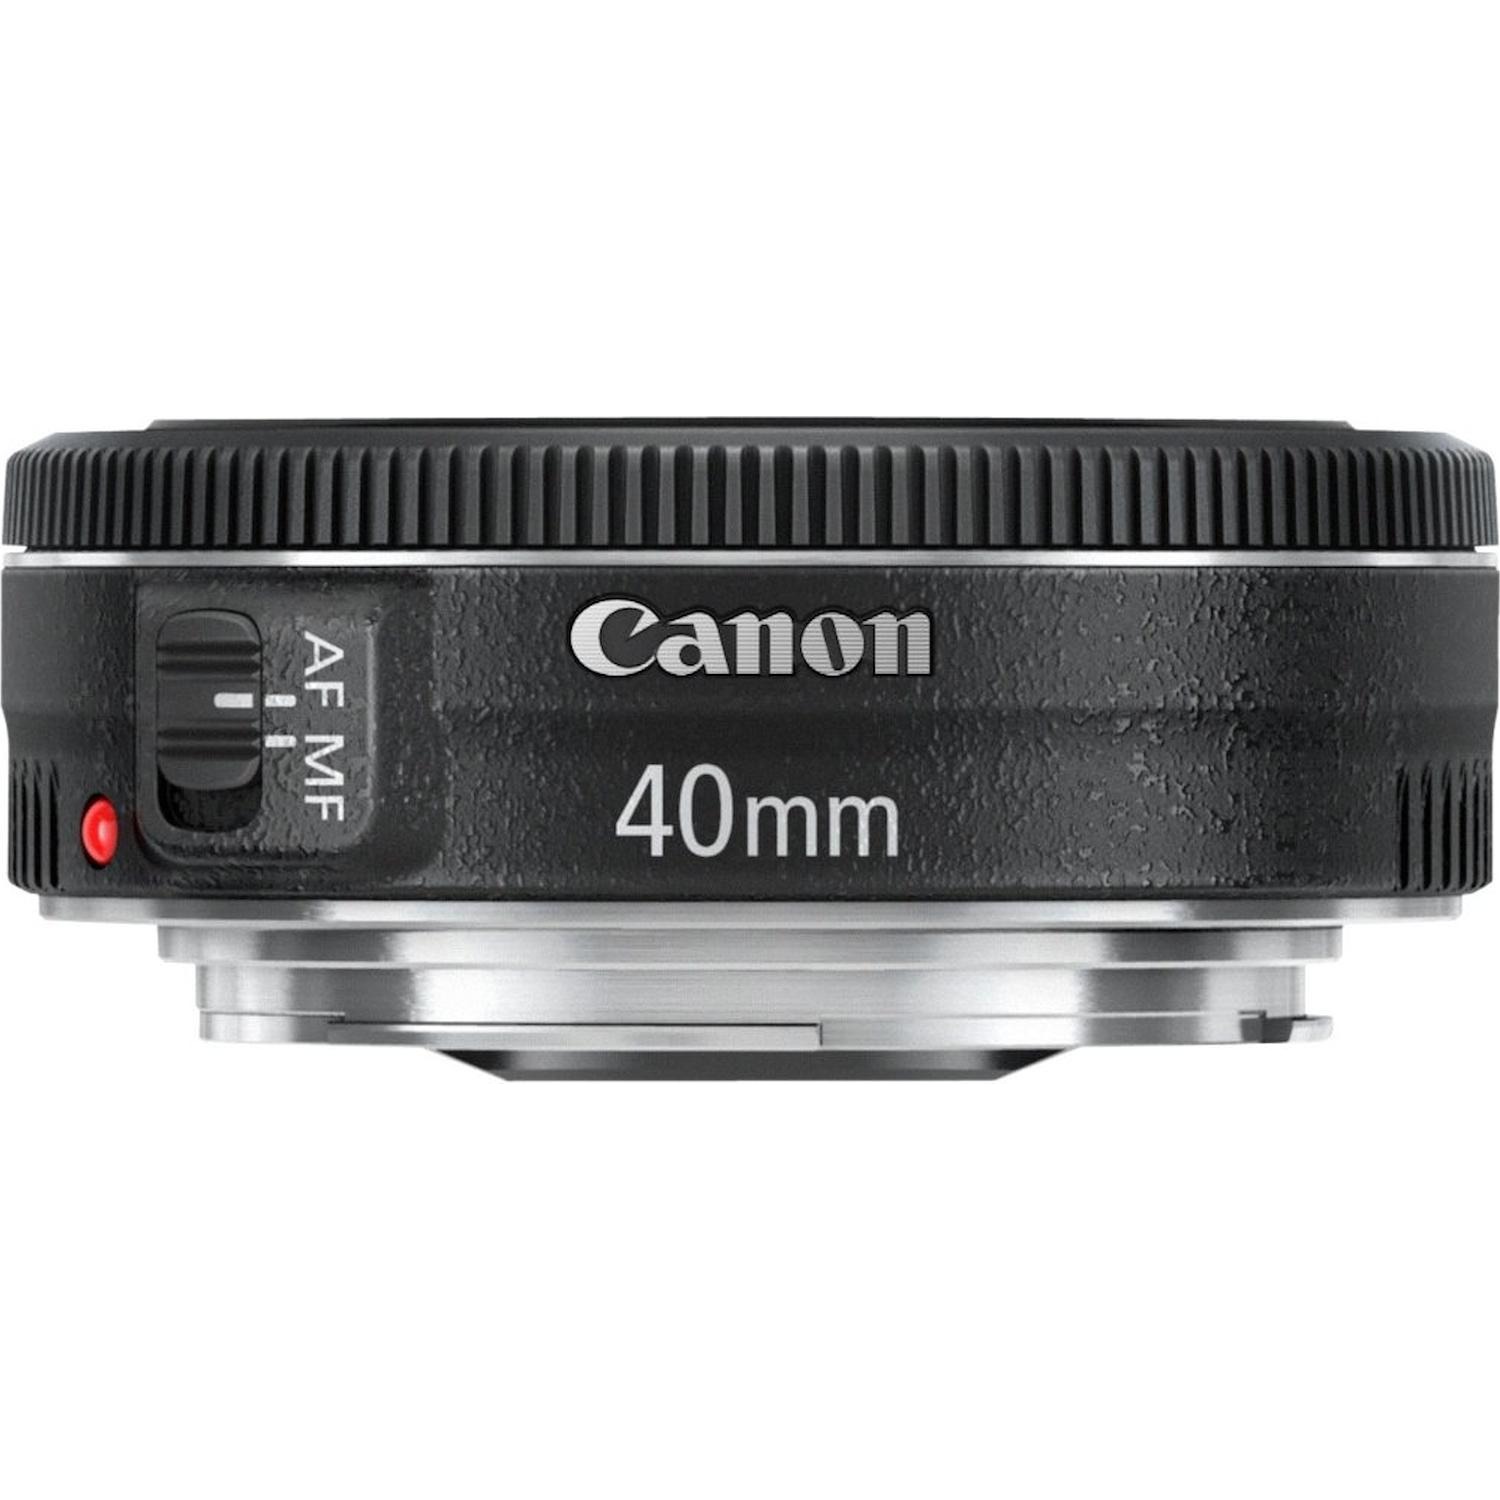 Immagine per Obiettivo Canon EF 40mm F/2.8 STM da DIMOStore